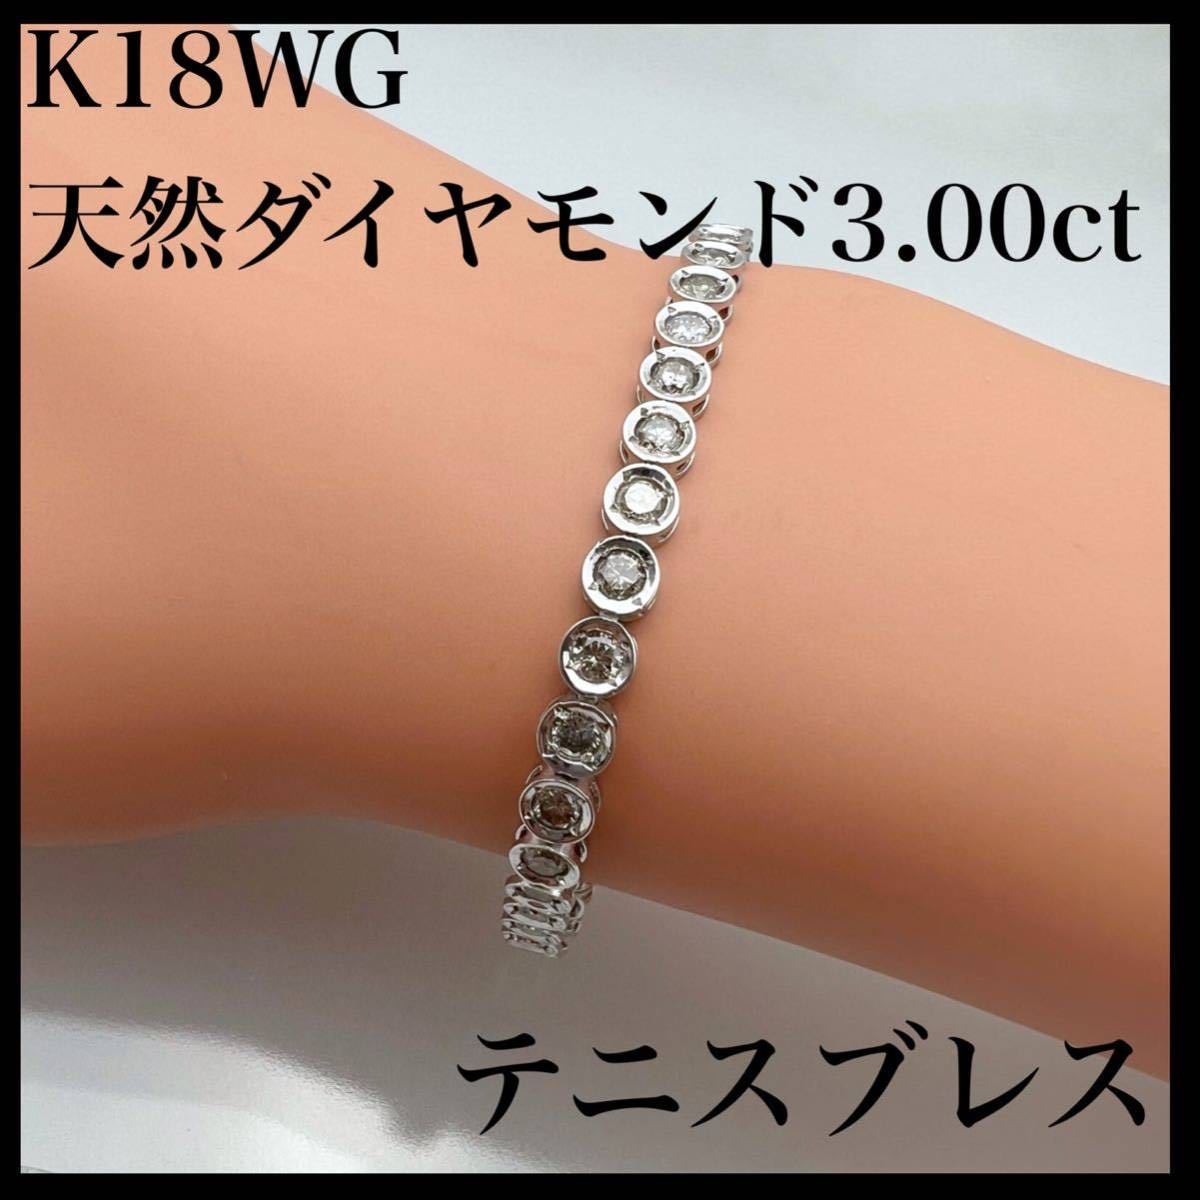 期間限定出品 K18WG ダイヤモンドブレスレット 1.00ct （刻印あり)-